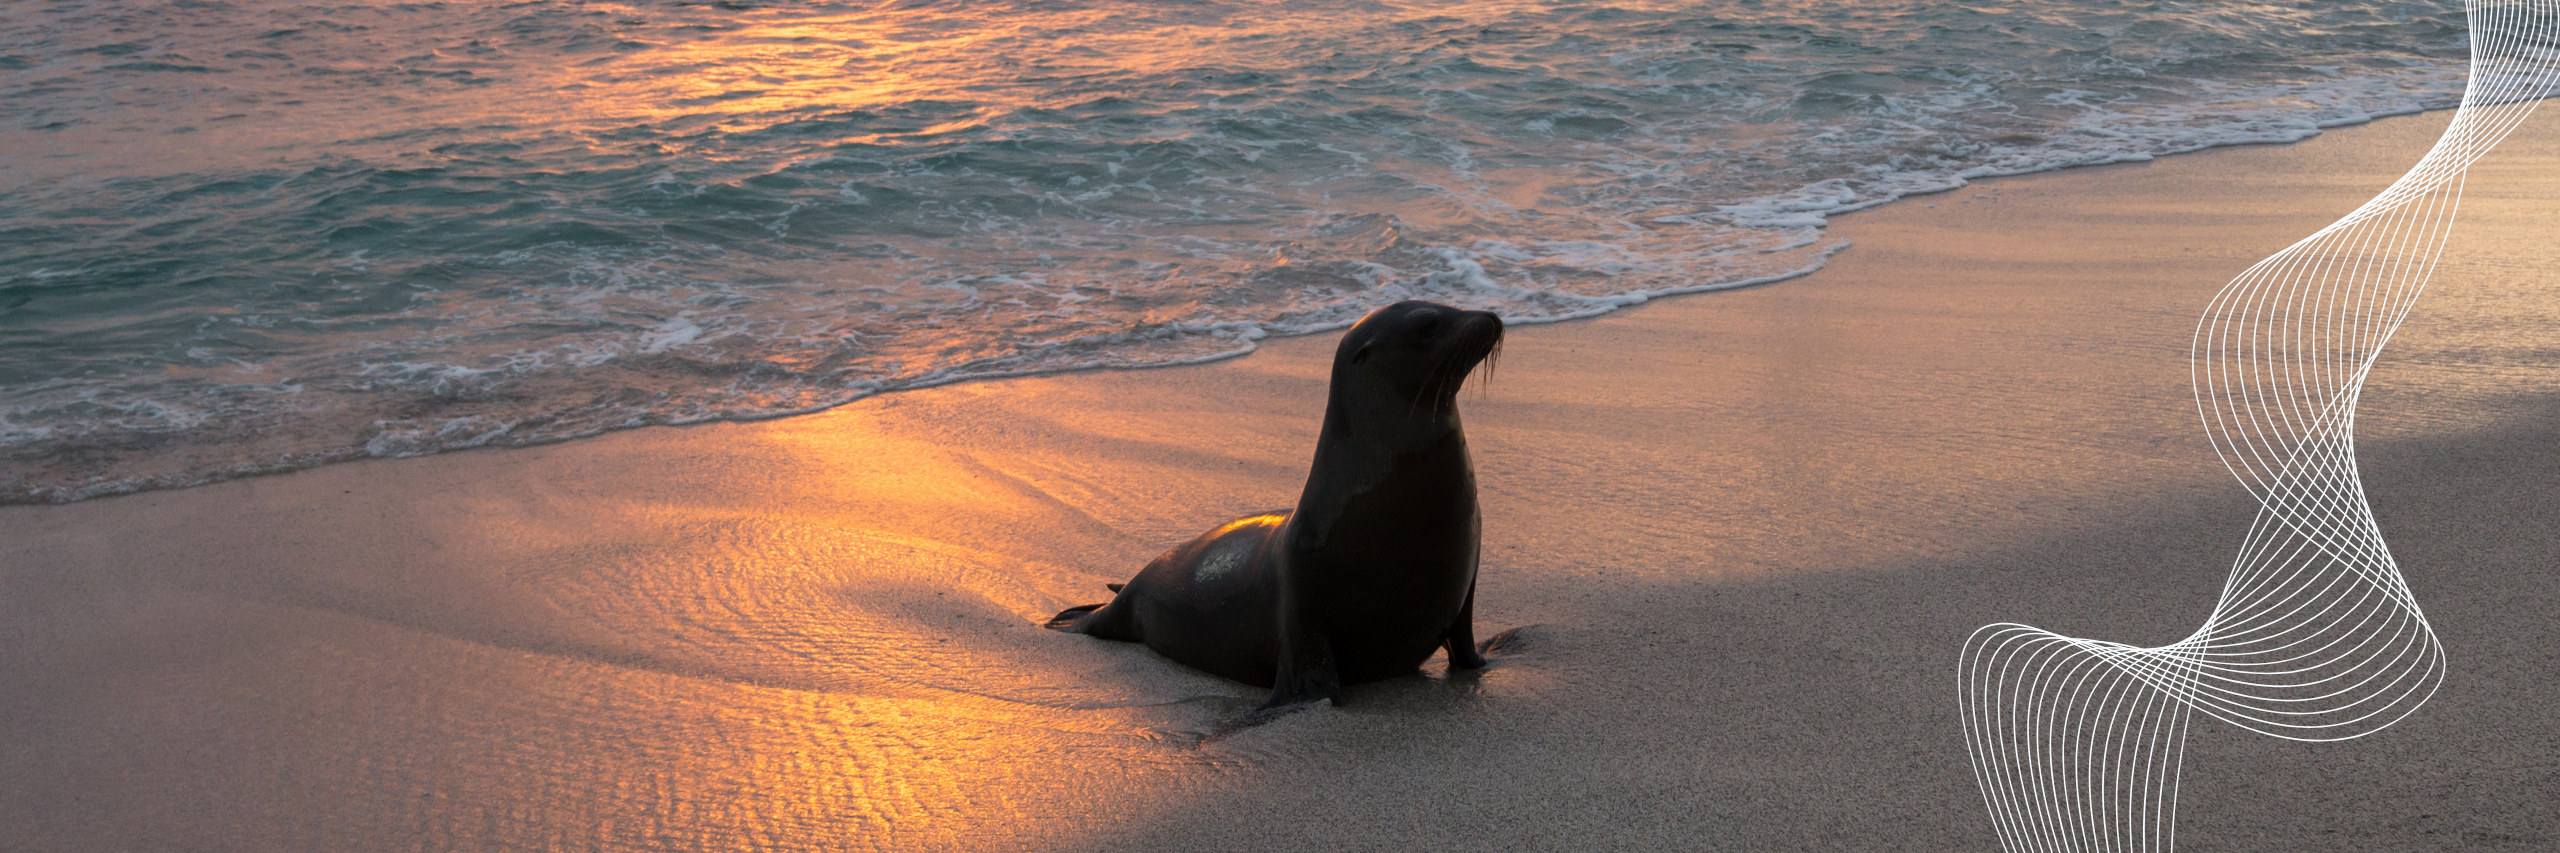 Descubre las Islas Galápagos con Rebecca Adventure Travel.